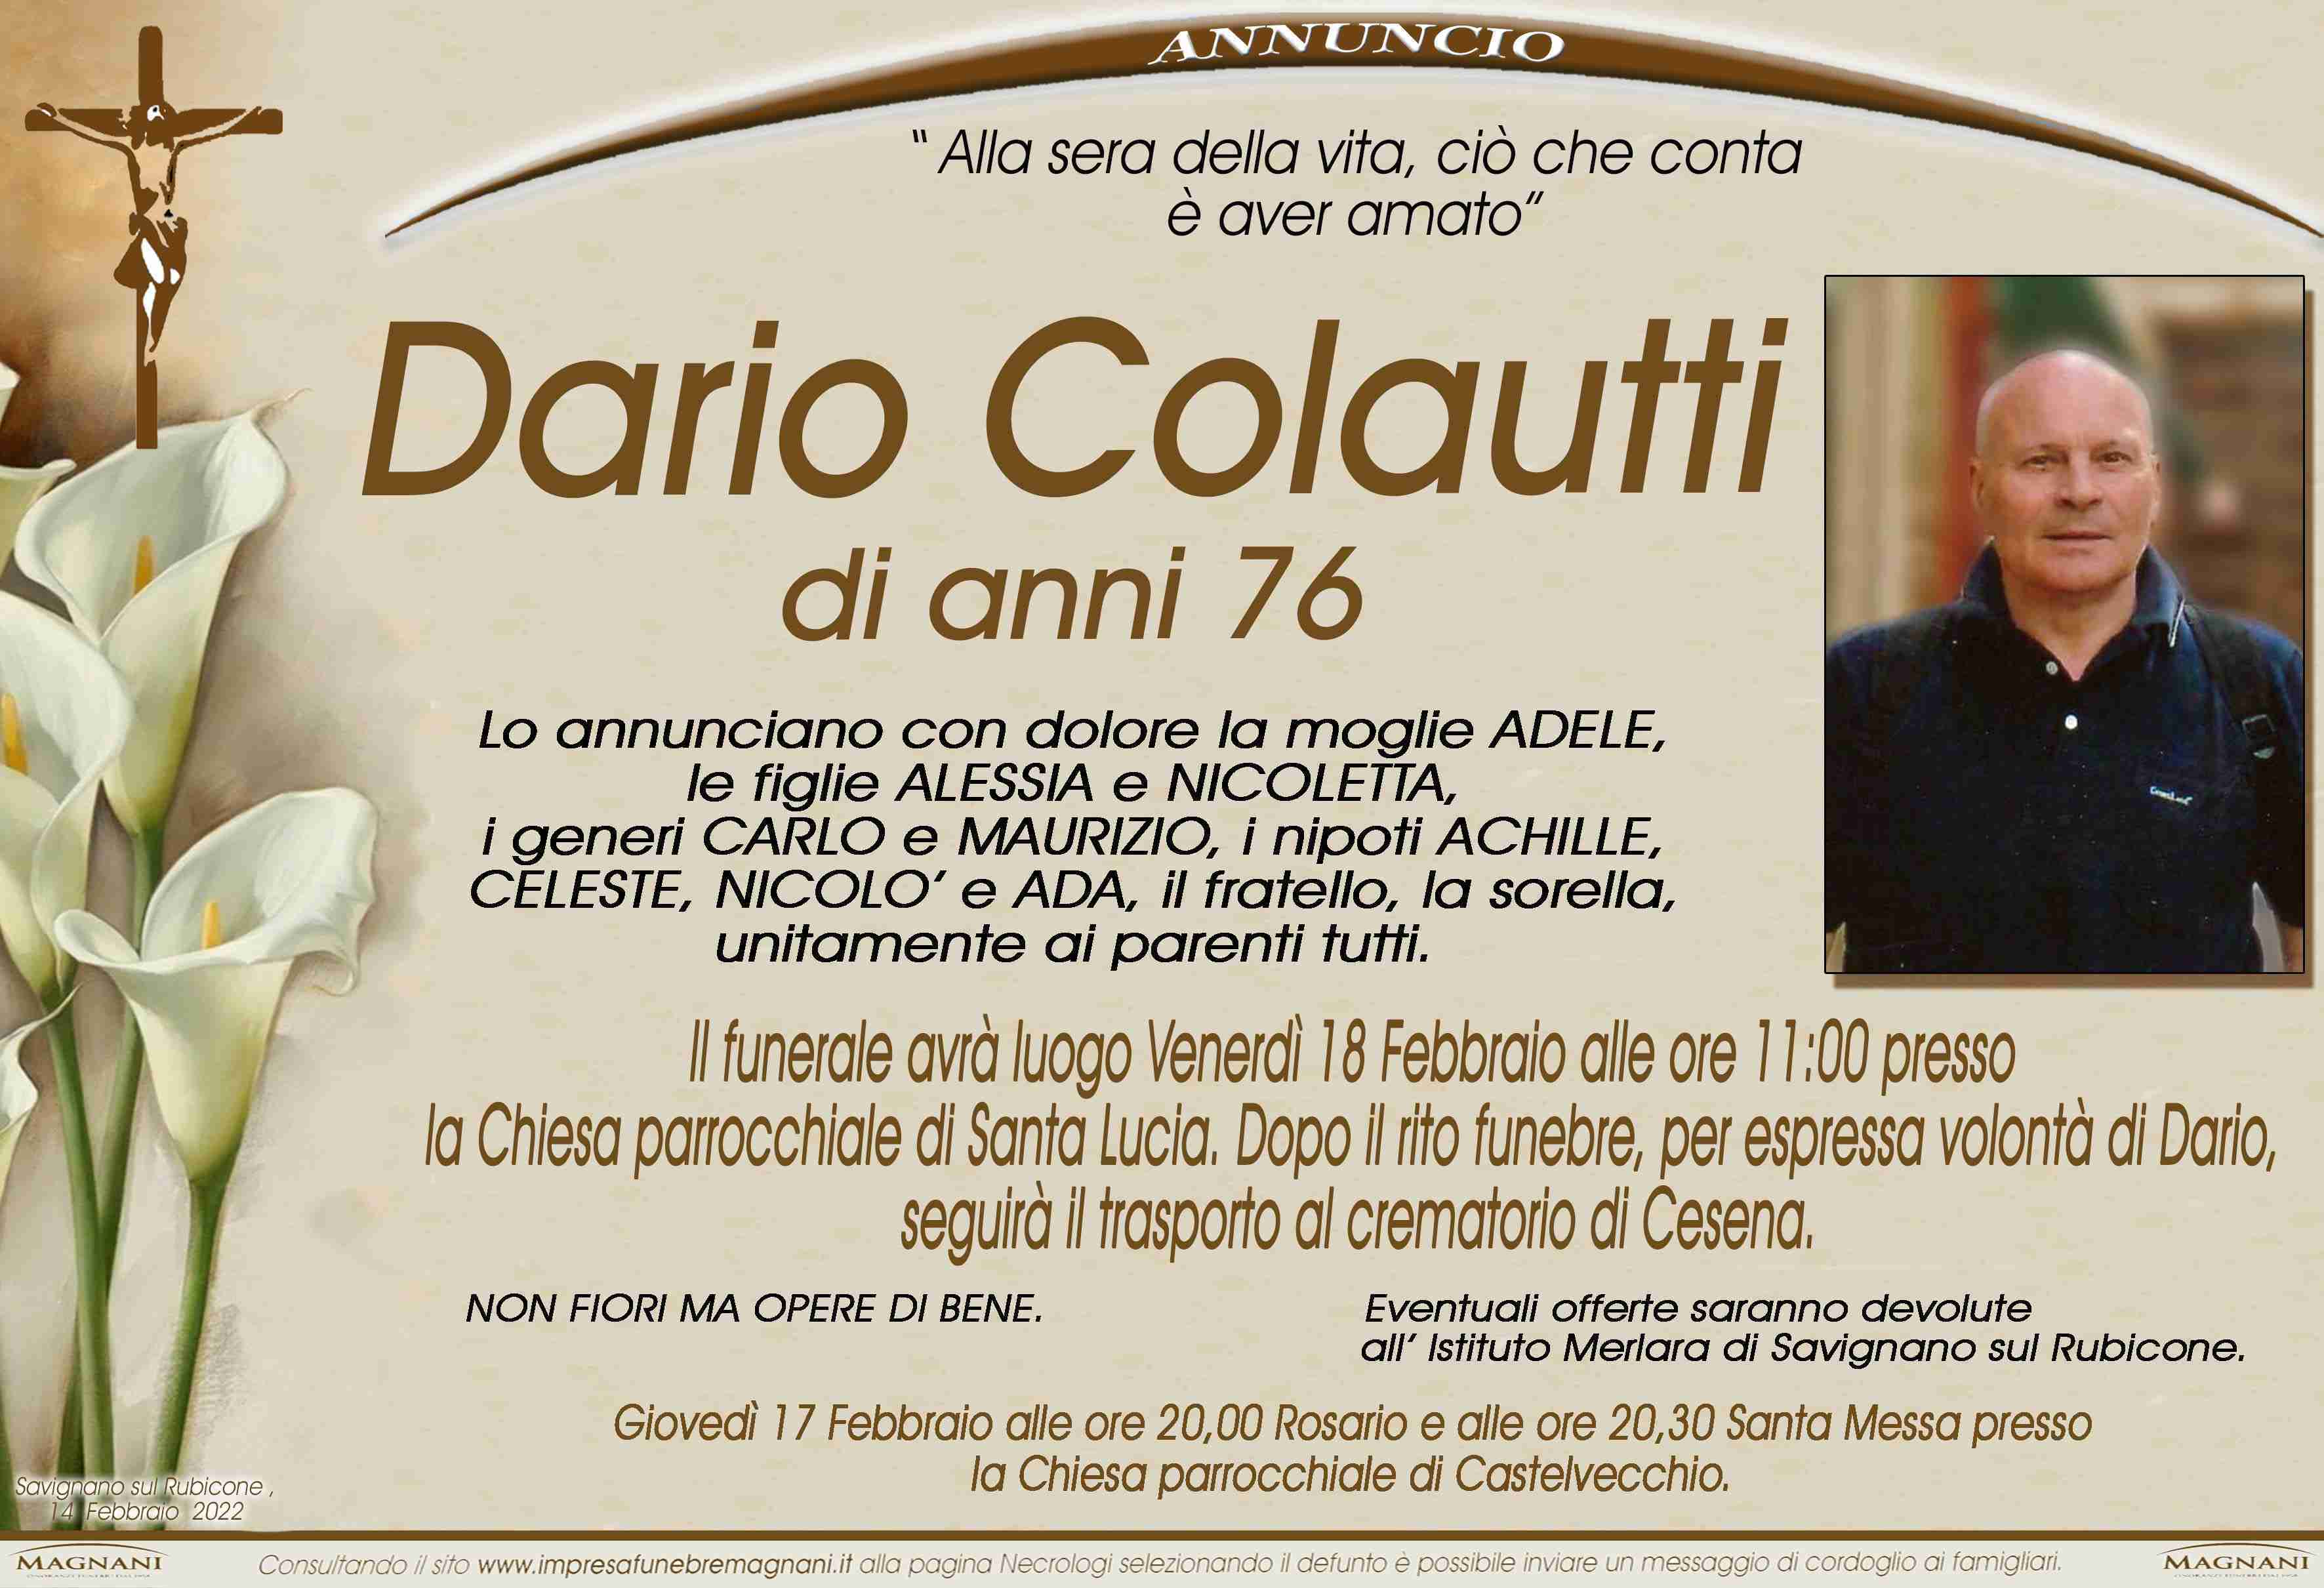 Dario Colautti